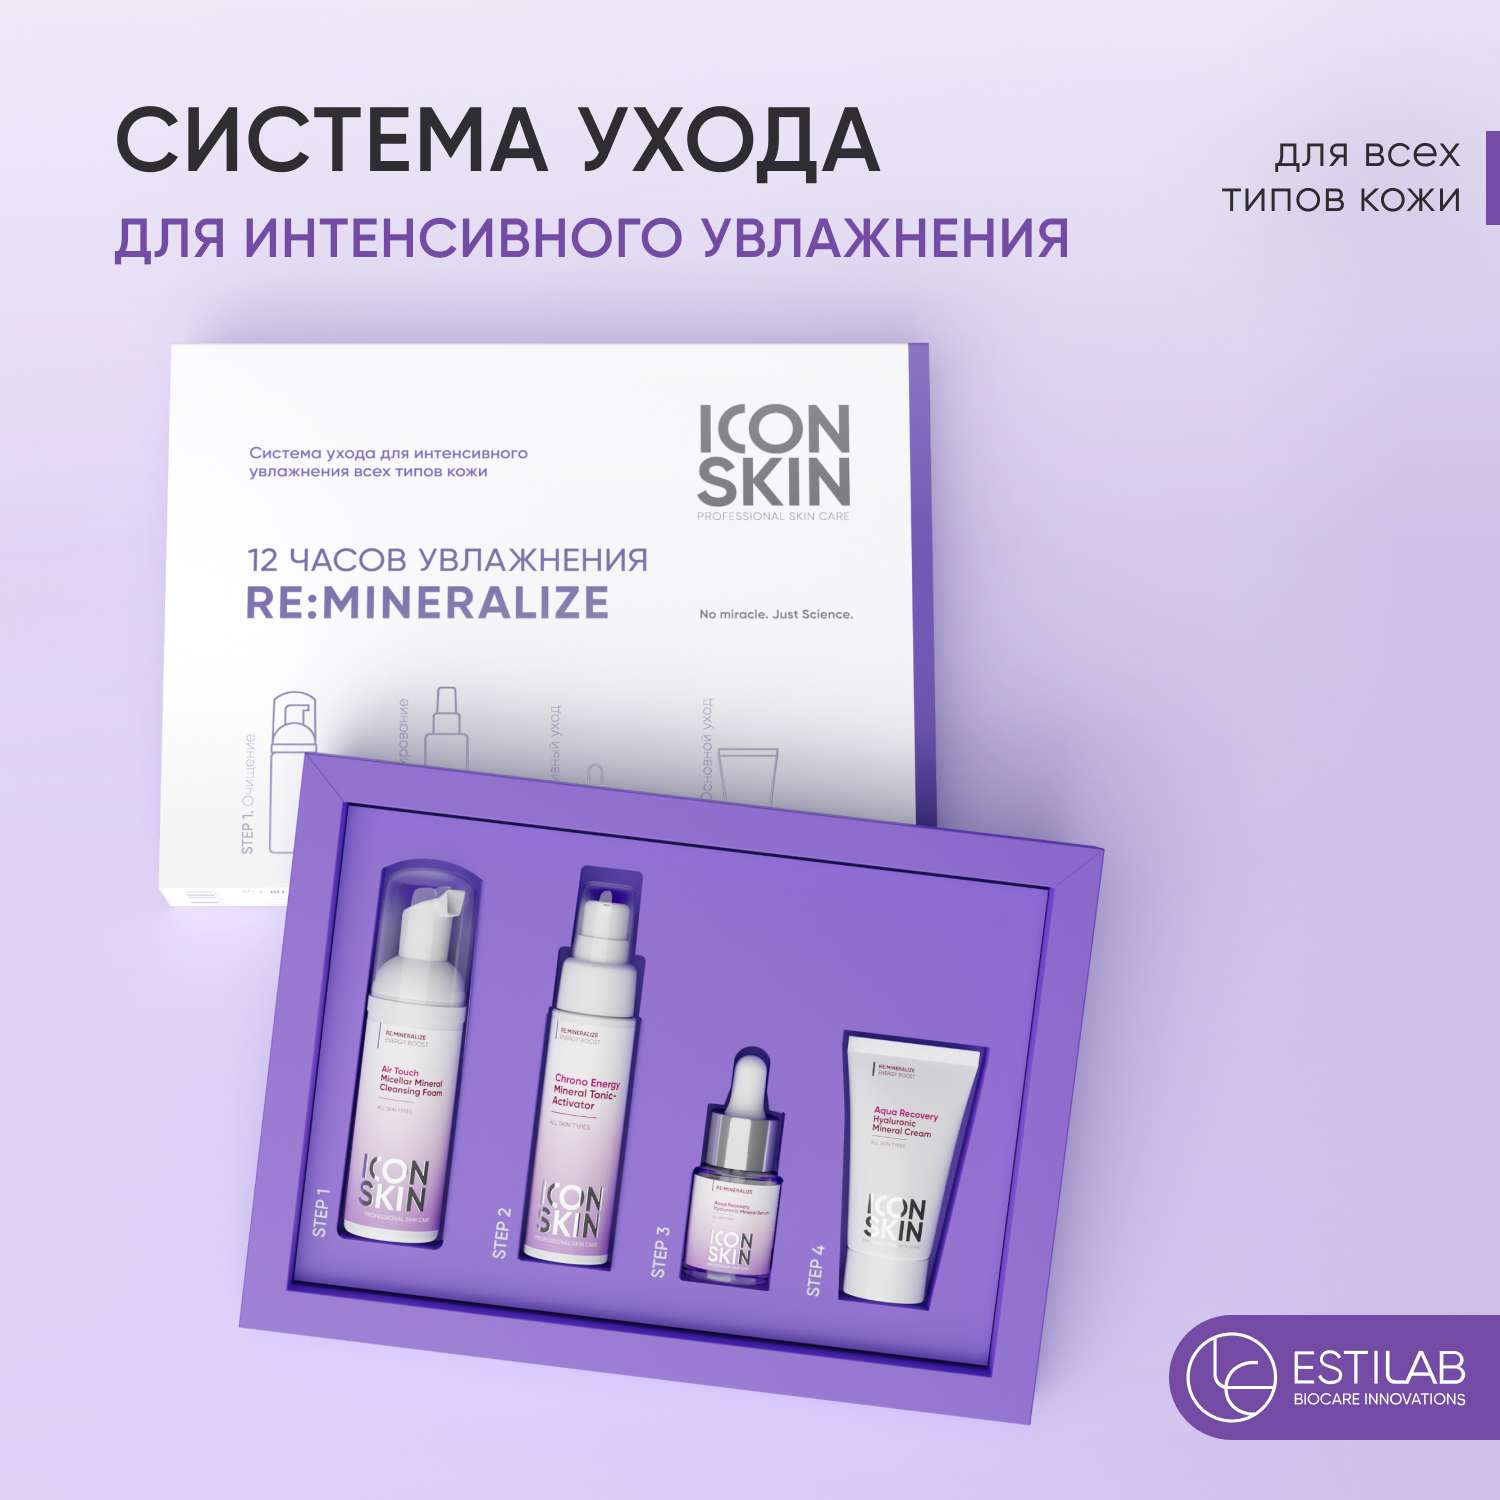 Набор уходовой косметики ICON SKIN для лица re:mineralize для интенсивного увлажнения кожи - фото 1